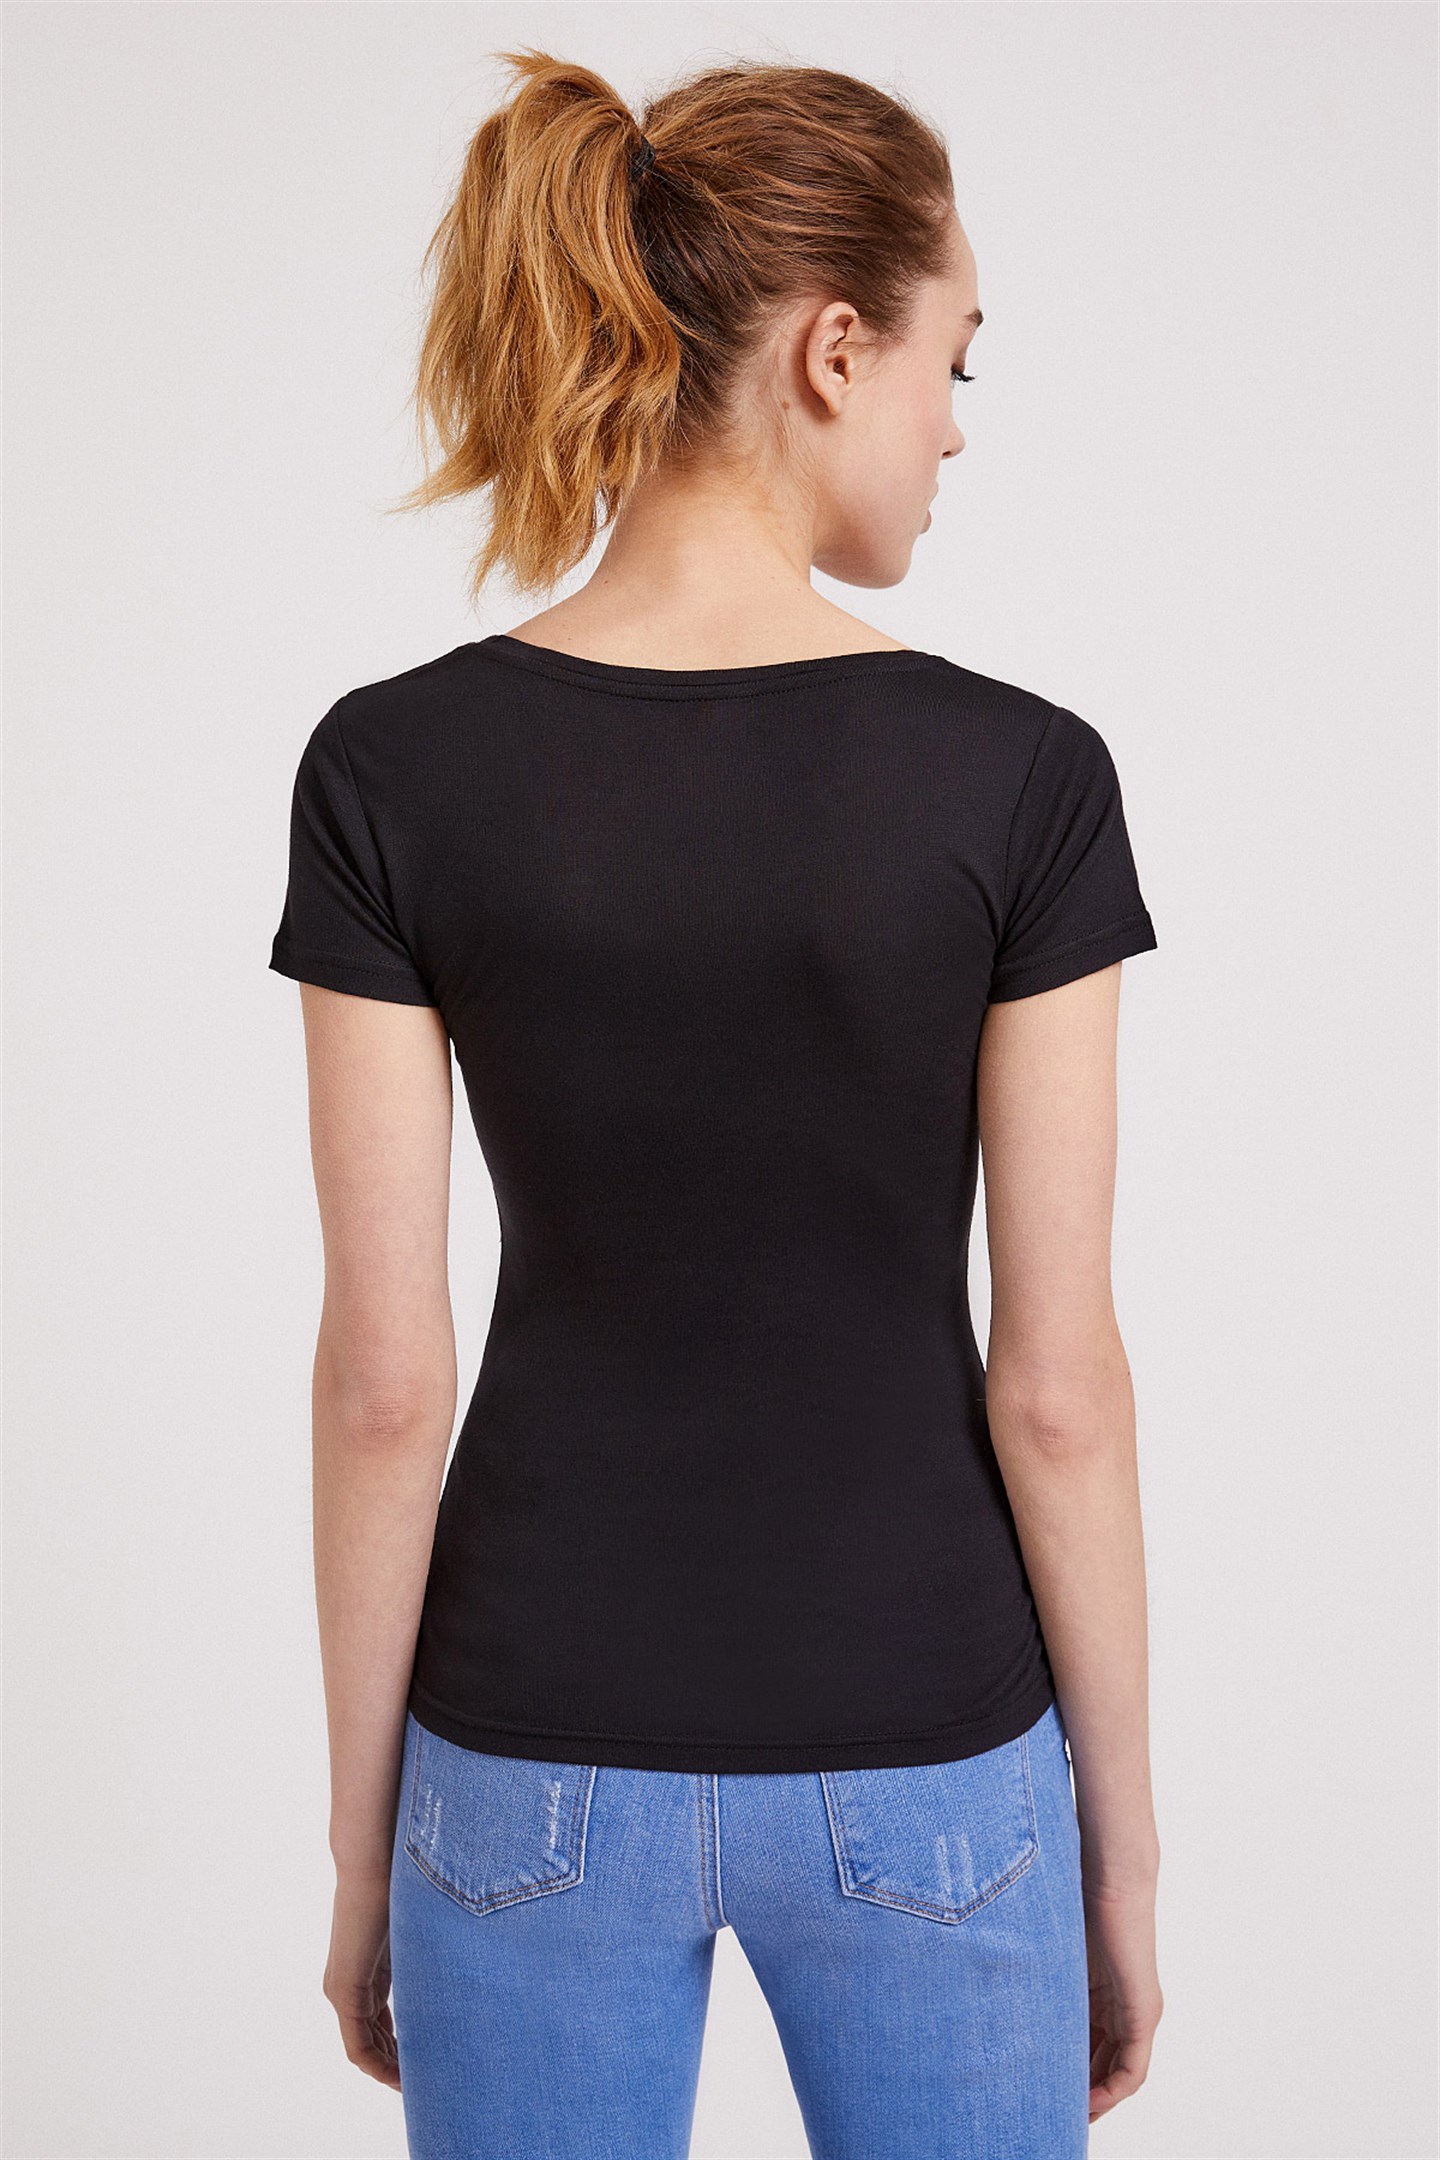 Lee Cooper Love Kadın V Yaka T-Shirt Siyah. 4